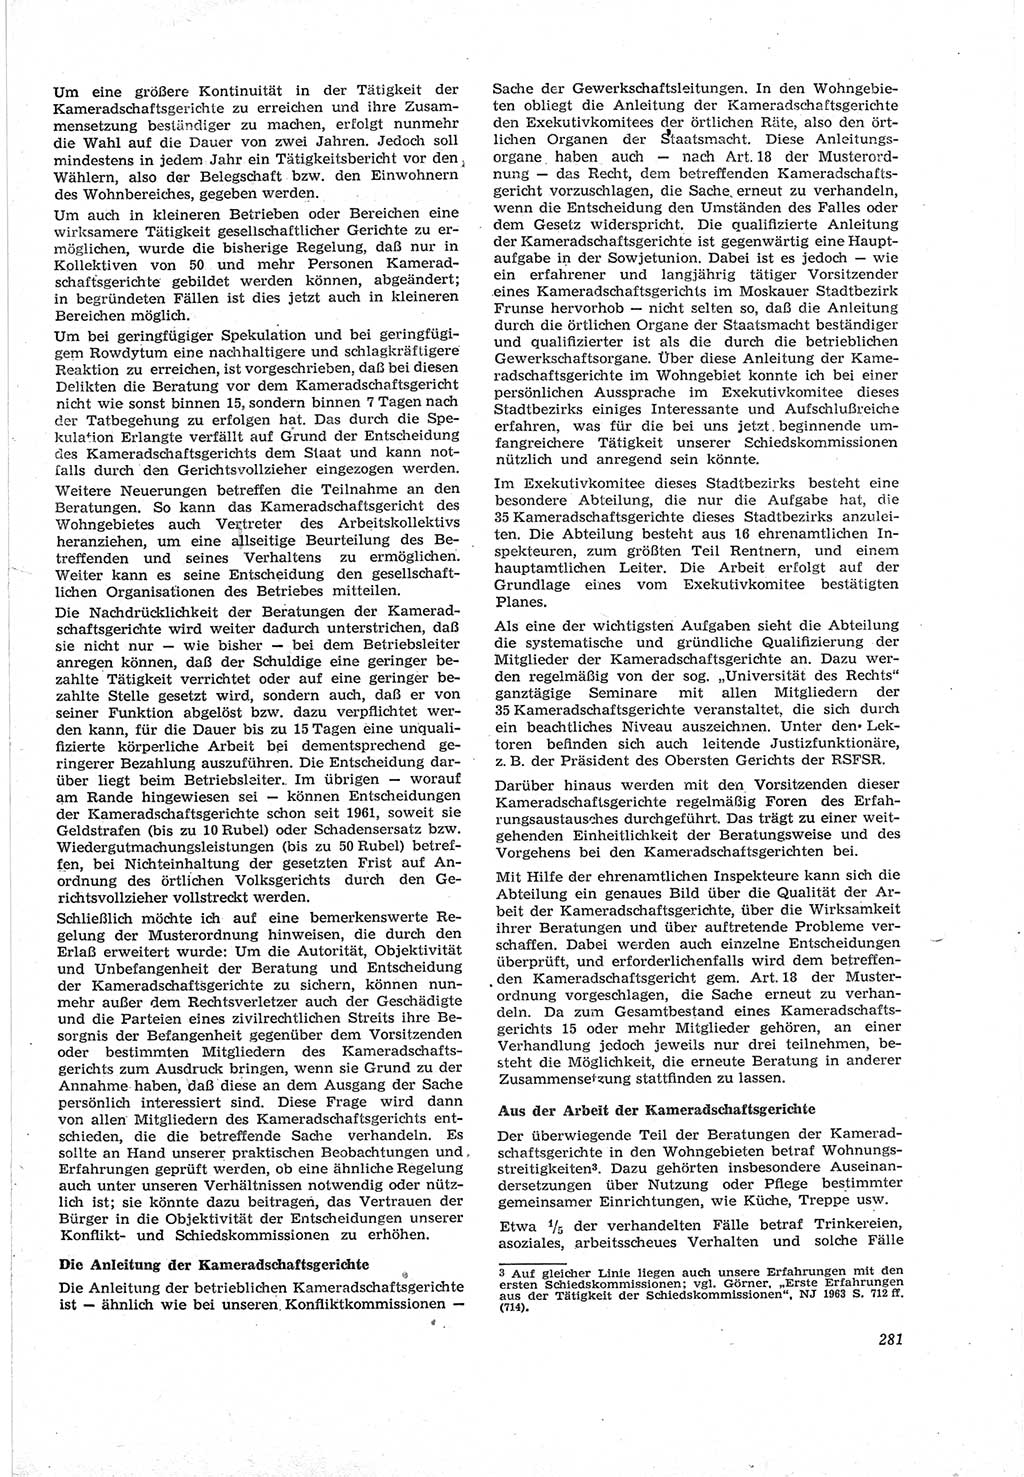 Neue Justiz (NJ), Zeitschrift für Recht und Rechtswissenschaft [Deutsche Demokratische Republik (DDR)], 18. Jahrgang 1964, Seite 281 (NJ DDR 1964, S. 281)